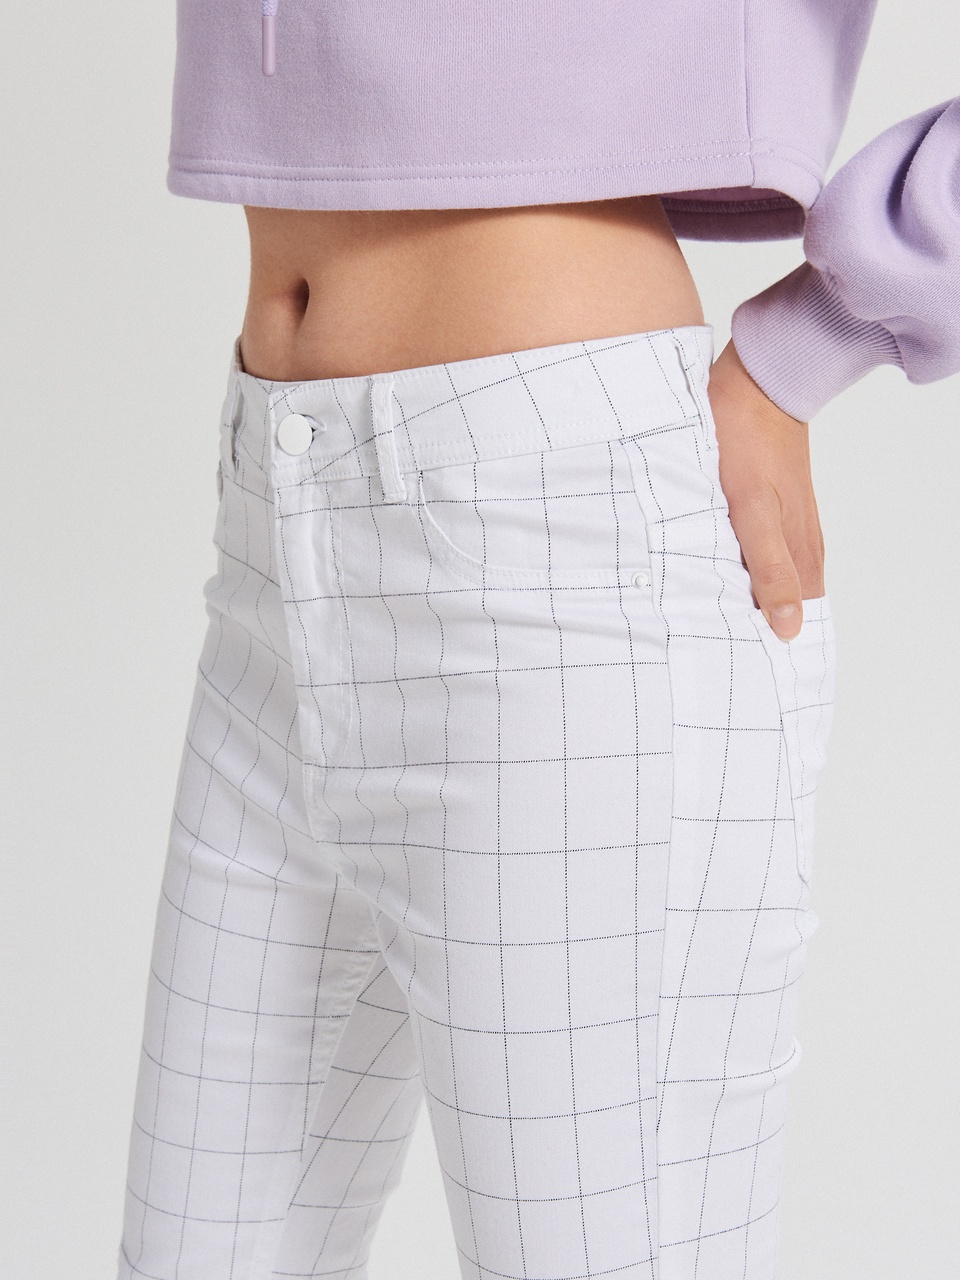 Клетчатые брюки с завышенной талией - 499 ₽, заказать онлайн.